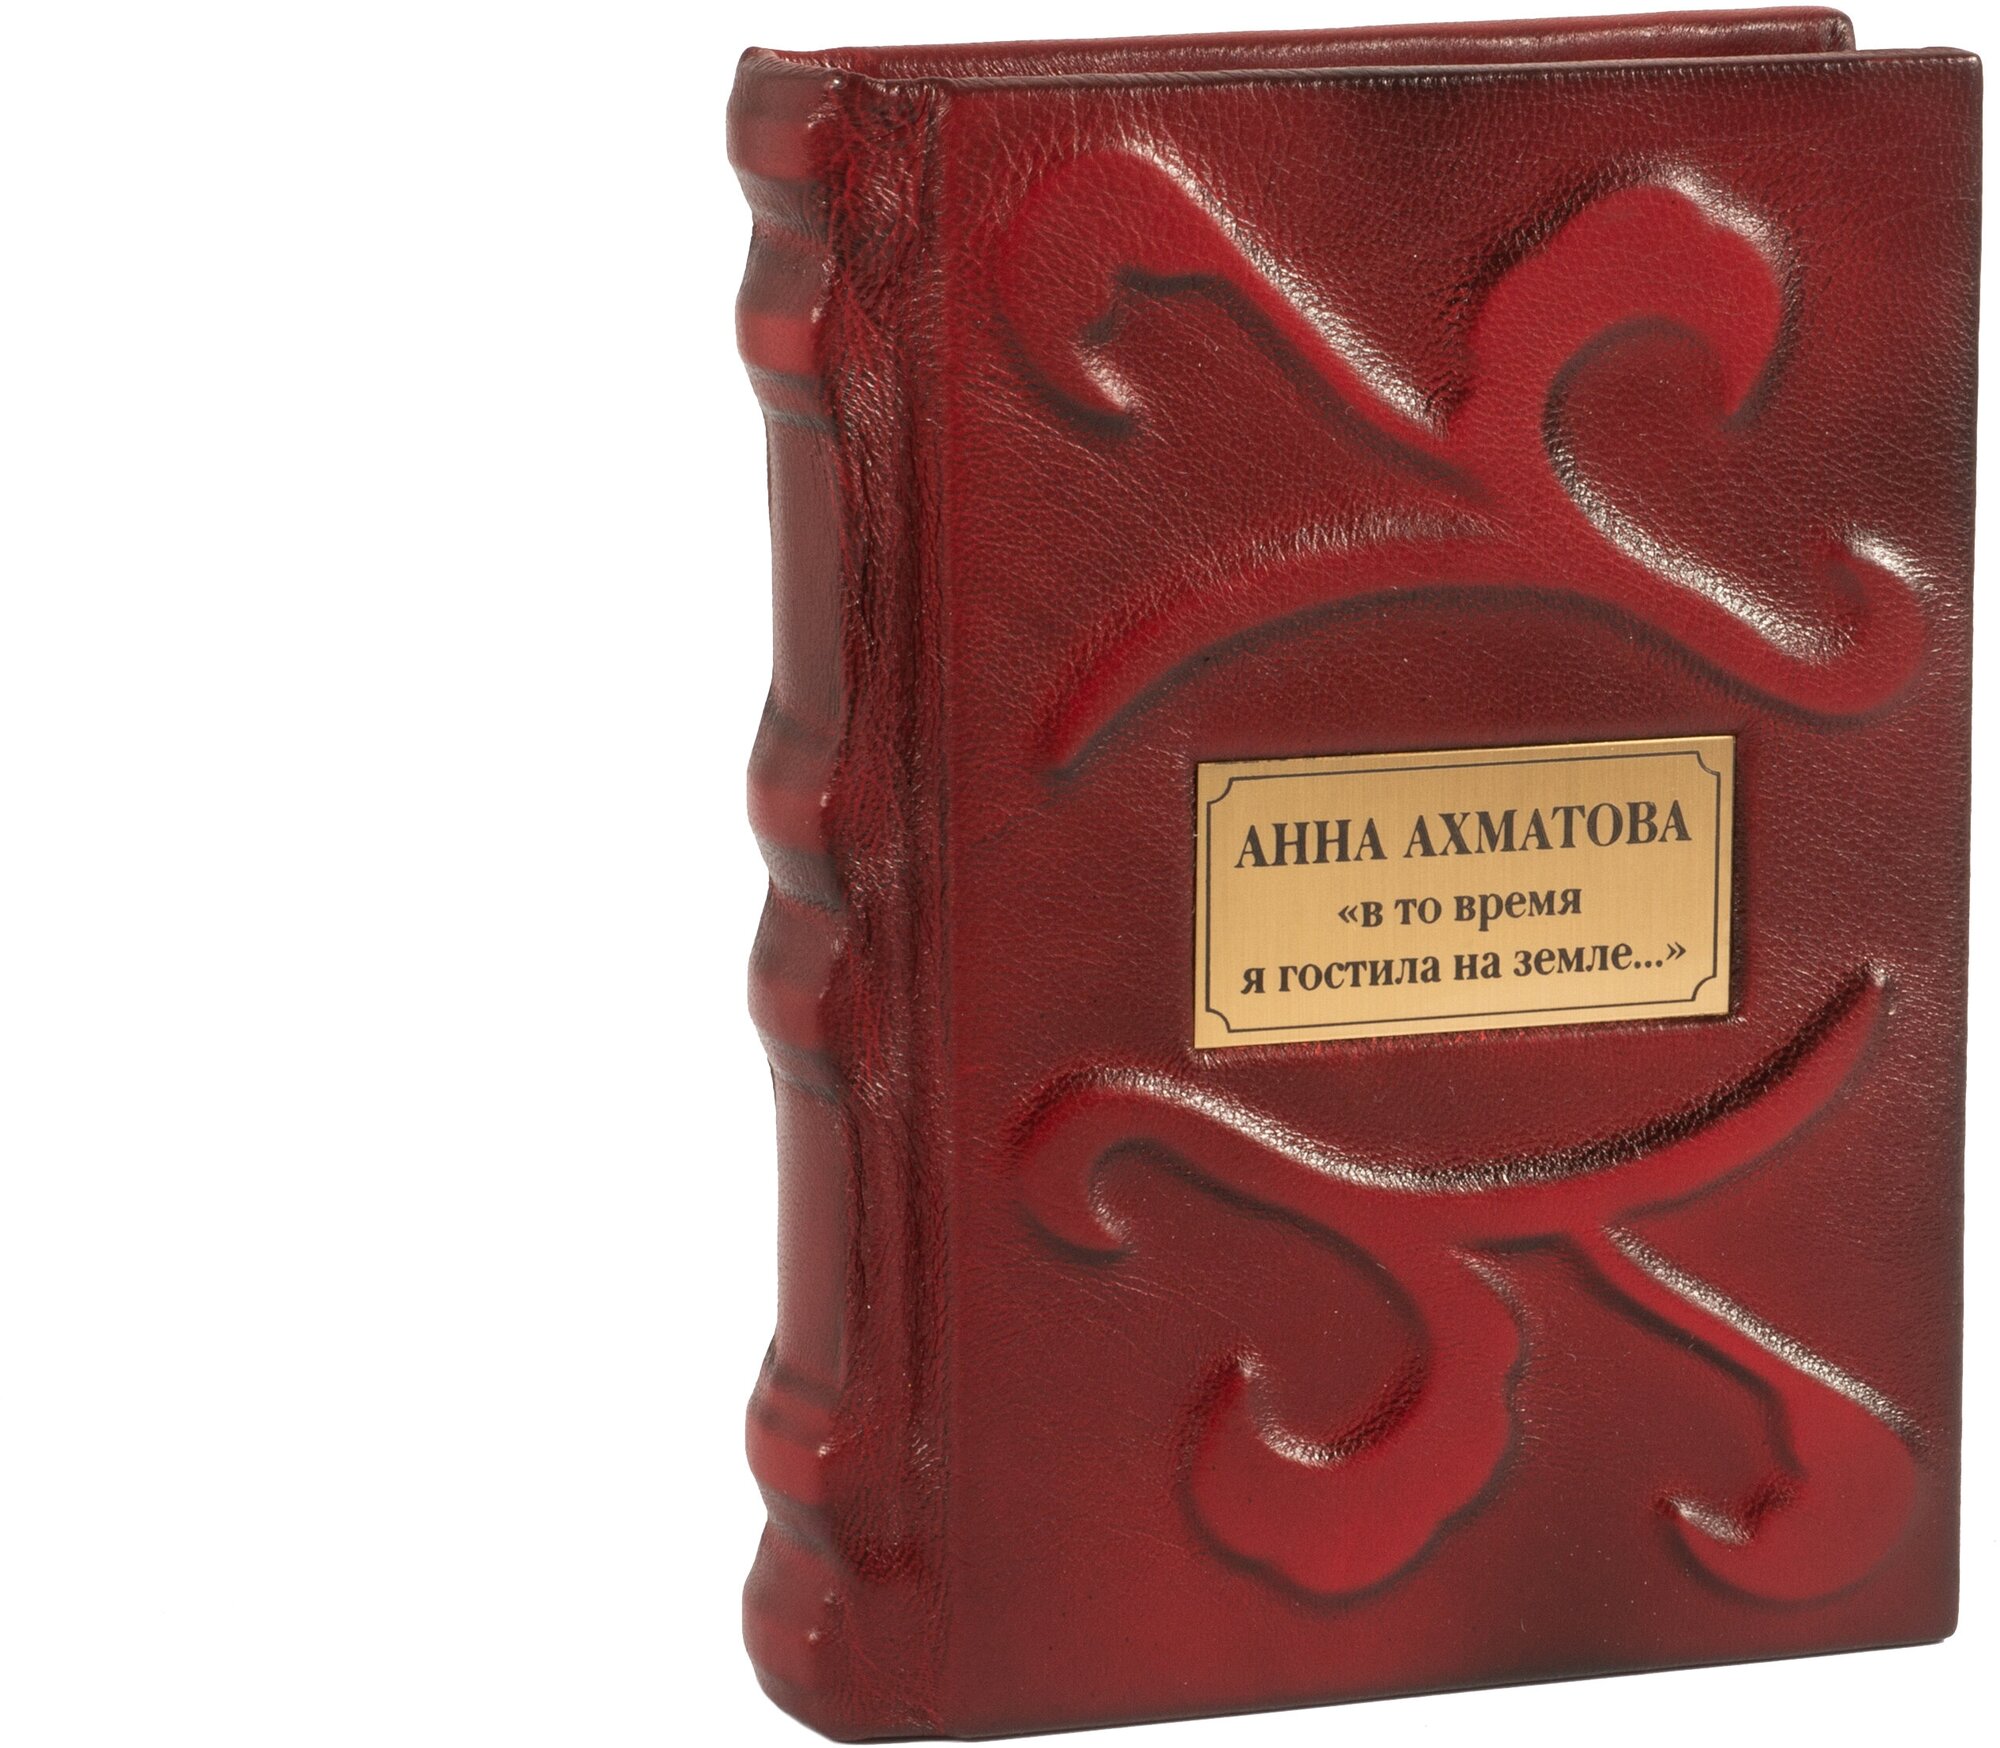 Подарочная книга Анны Ахматовой в кожаном переплете ручной работы "В то время я гостила на земле."